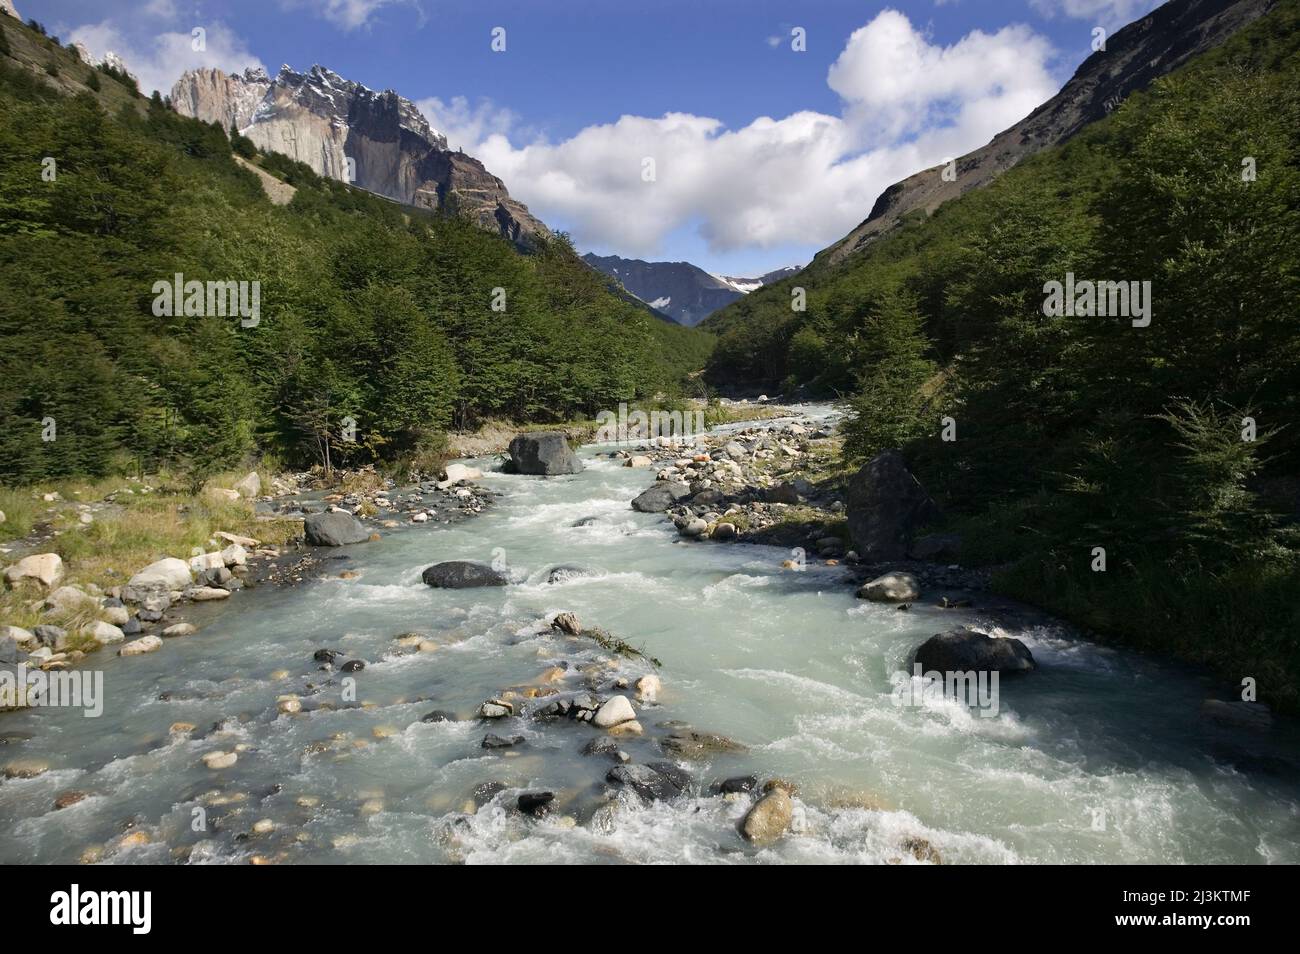 Le Rio Ascencio traverse la vallée de l'Ascencio, parc national Torres del Paine au Chili; Patagonie, Chili Banque D'Images